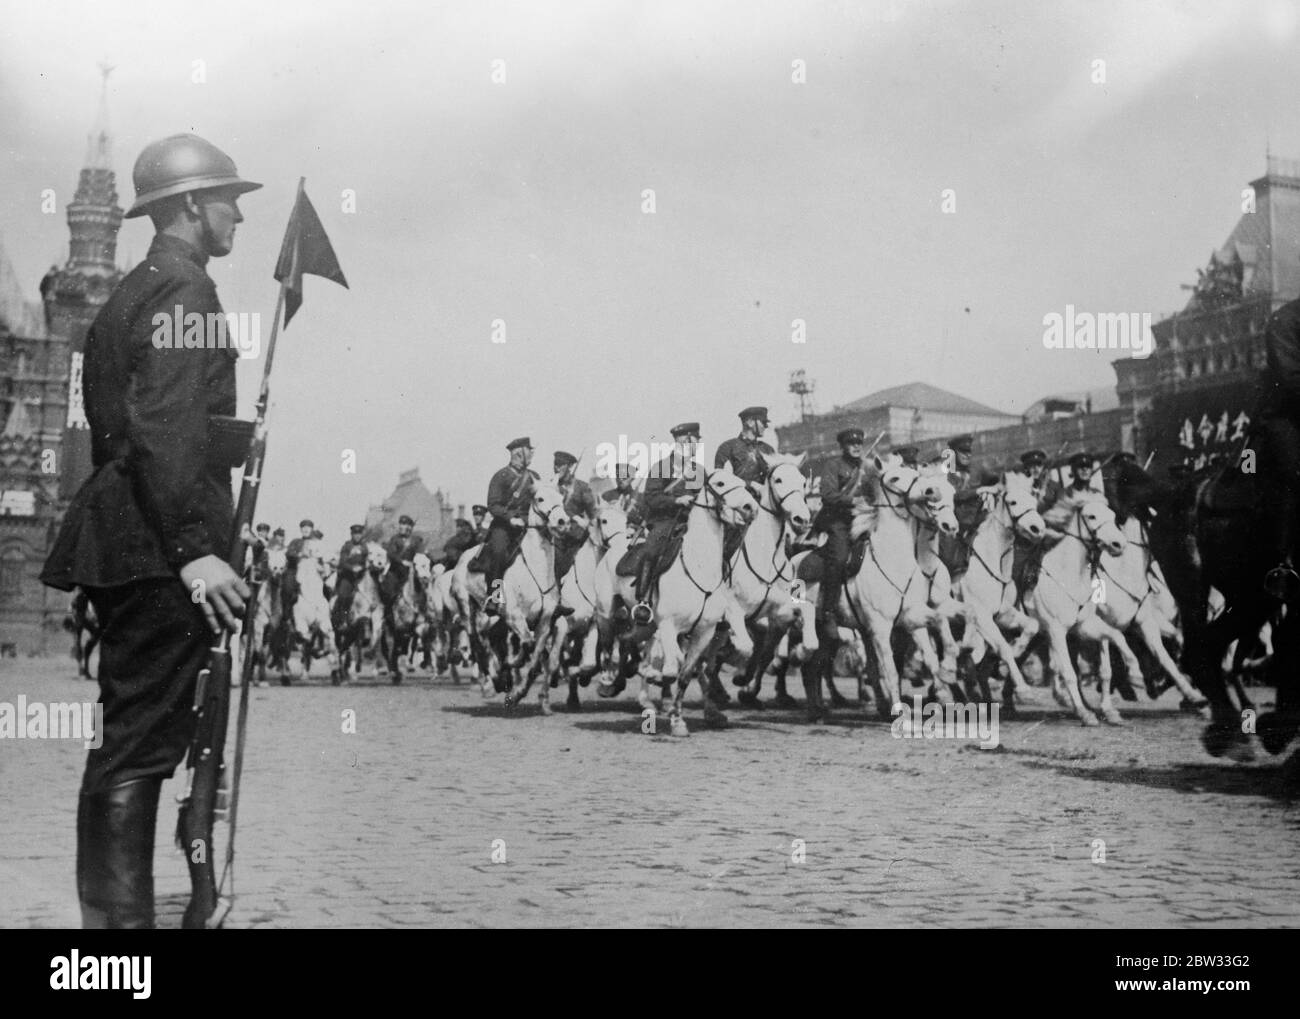 Russische Kavallerie Parade auf dem Roten Platz bei großen militärischen Display in Moskau. Russische Kavallerie Paraden auf dem Roten Platz, Moskau, wo Joseph Stalin überprüft Truppen der sowjetischen Armee bei der größten militärischen Parade in den Jahren in Russland. Mai 1932 Stockfoto